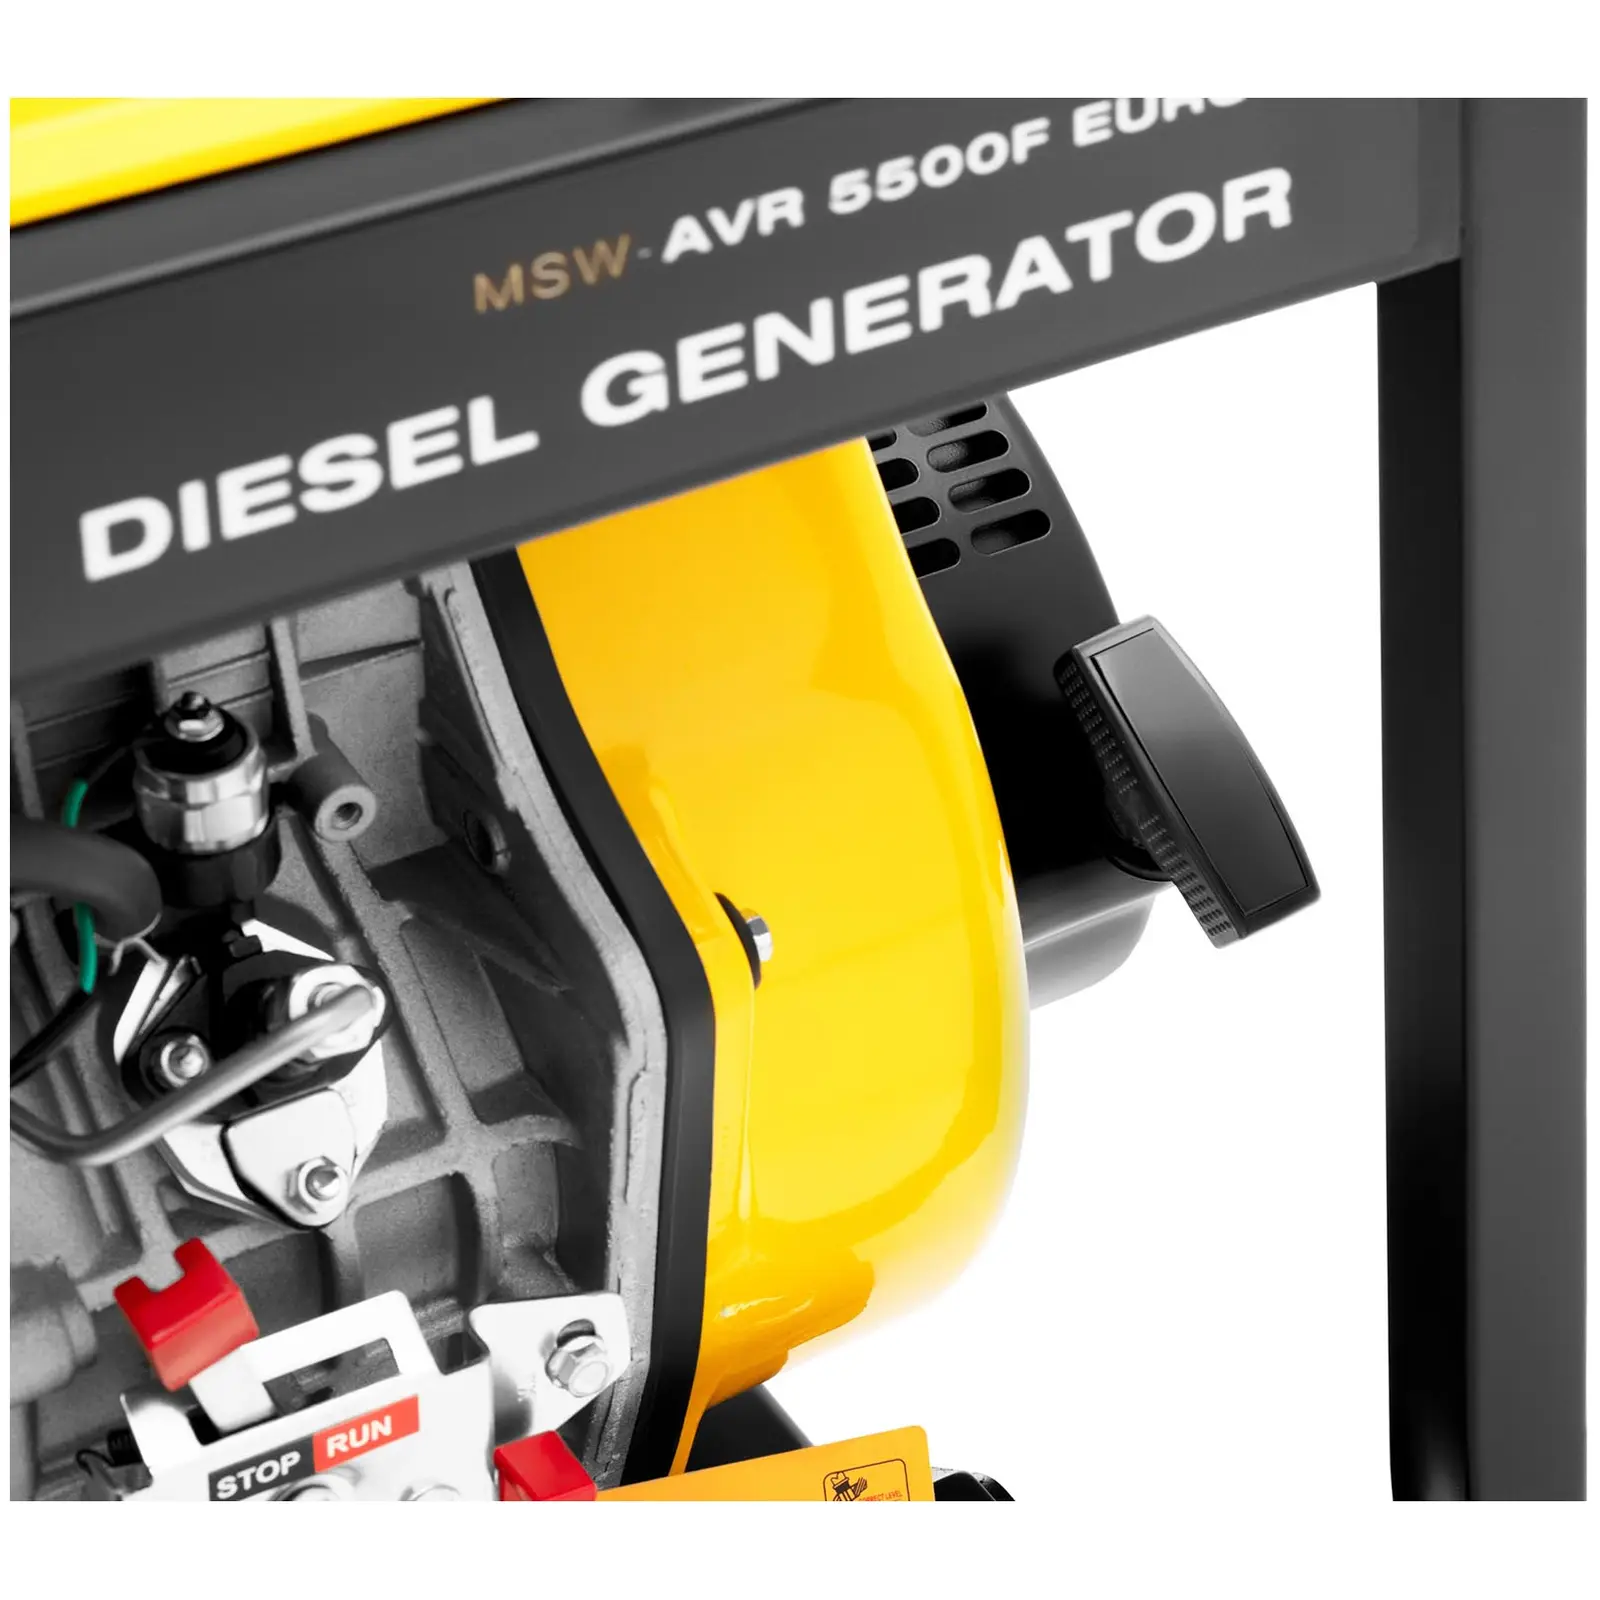 B-varer Dieselgenerator - 1830 / 5500 W - 12.5 L - 240/400 V - mobil - AVR - Euro 5